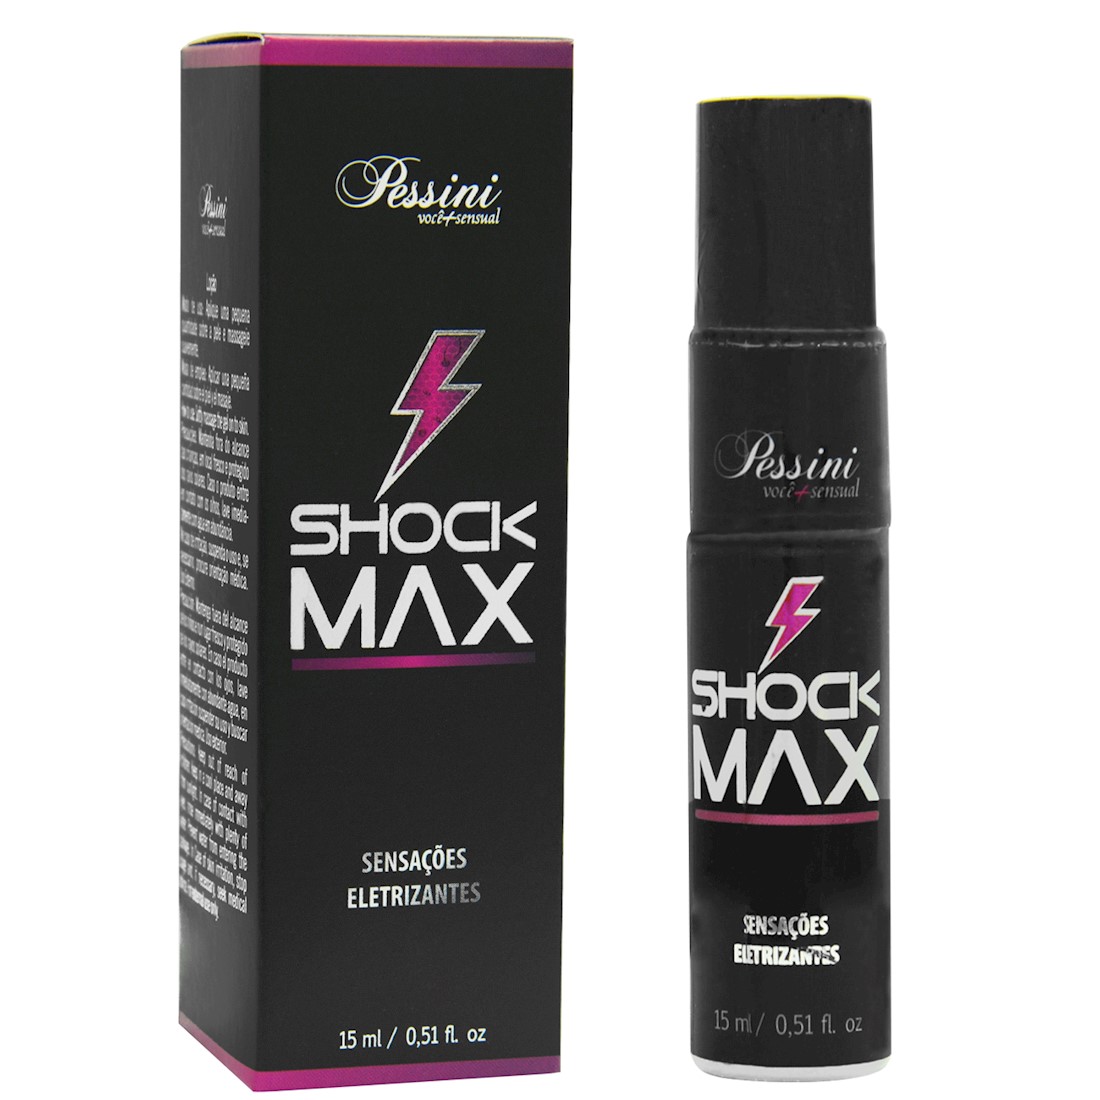 Vibrador liquido Shock Max Sensações Eletrizantes 15ml Pessini - Sex shop